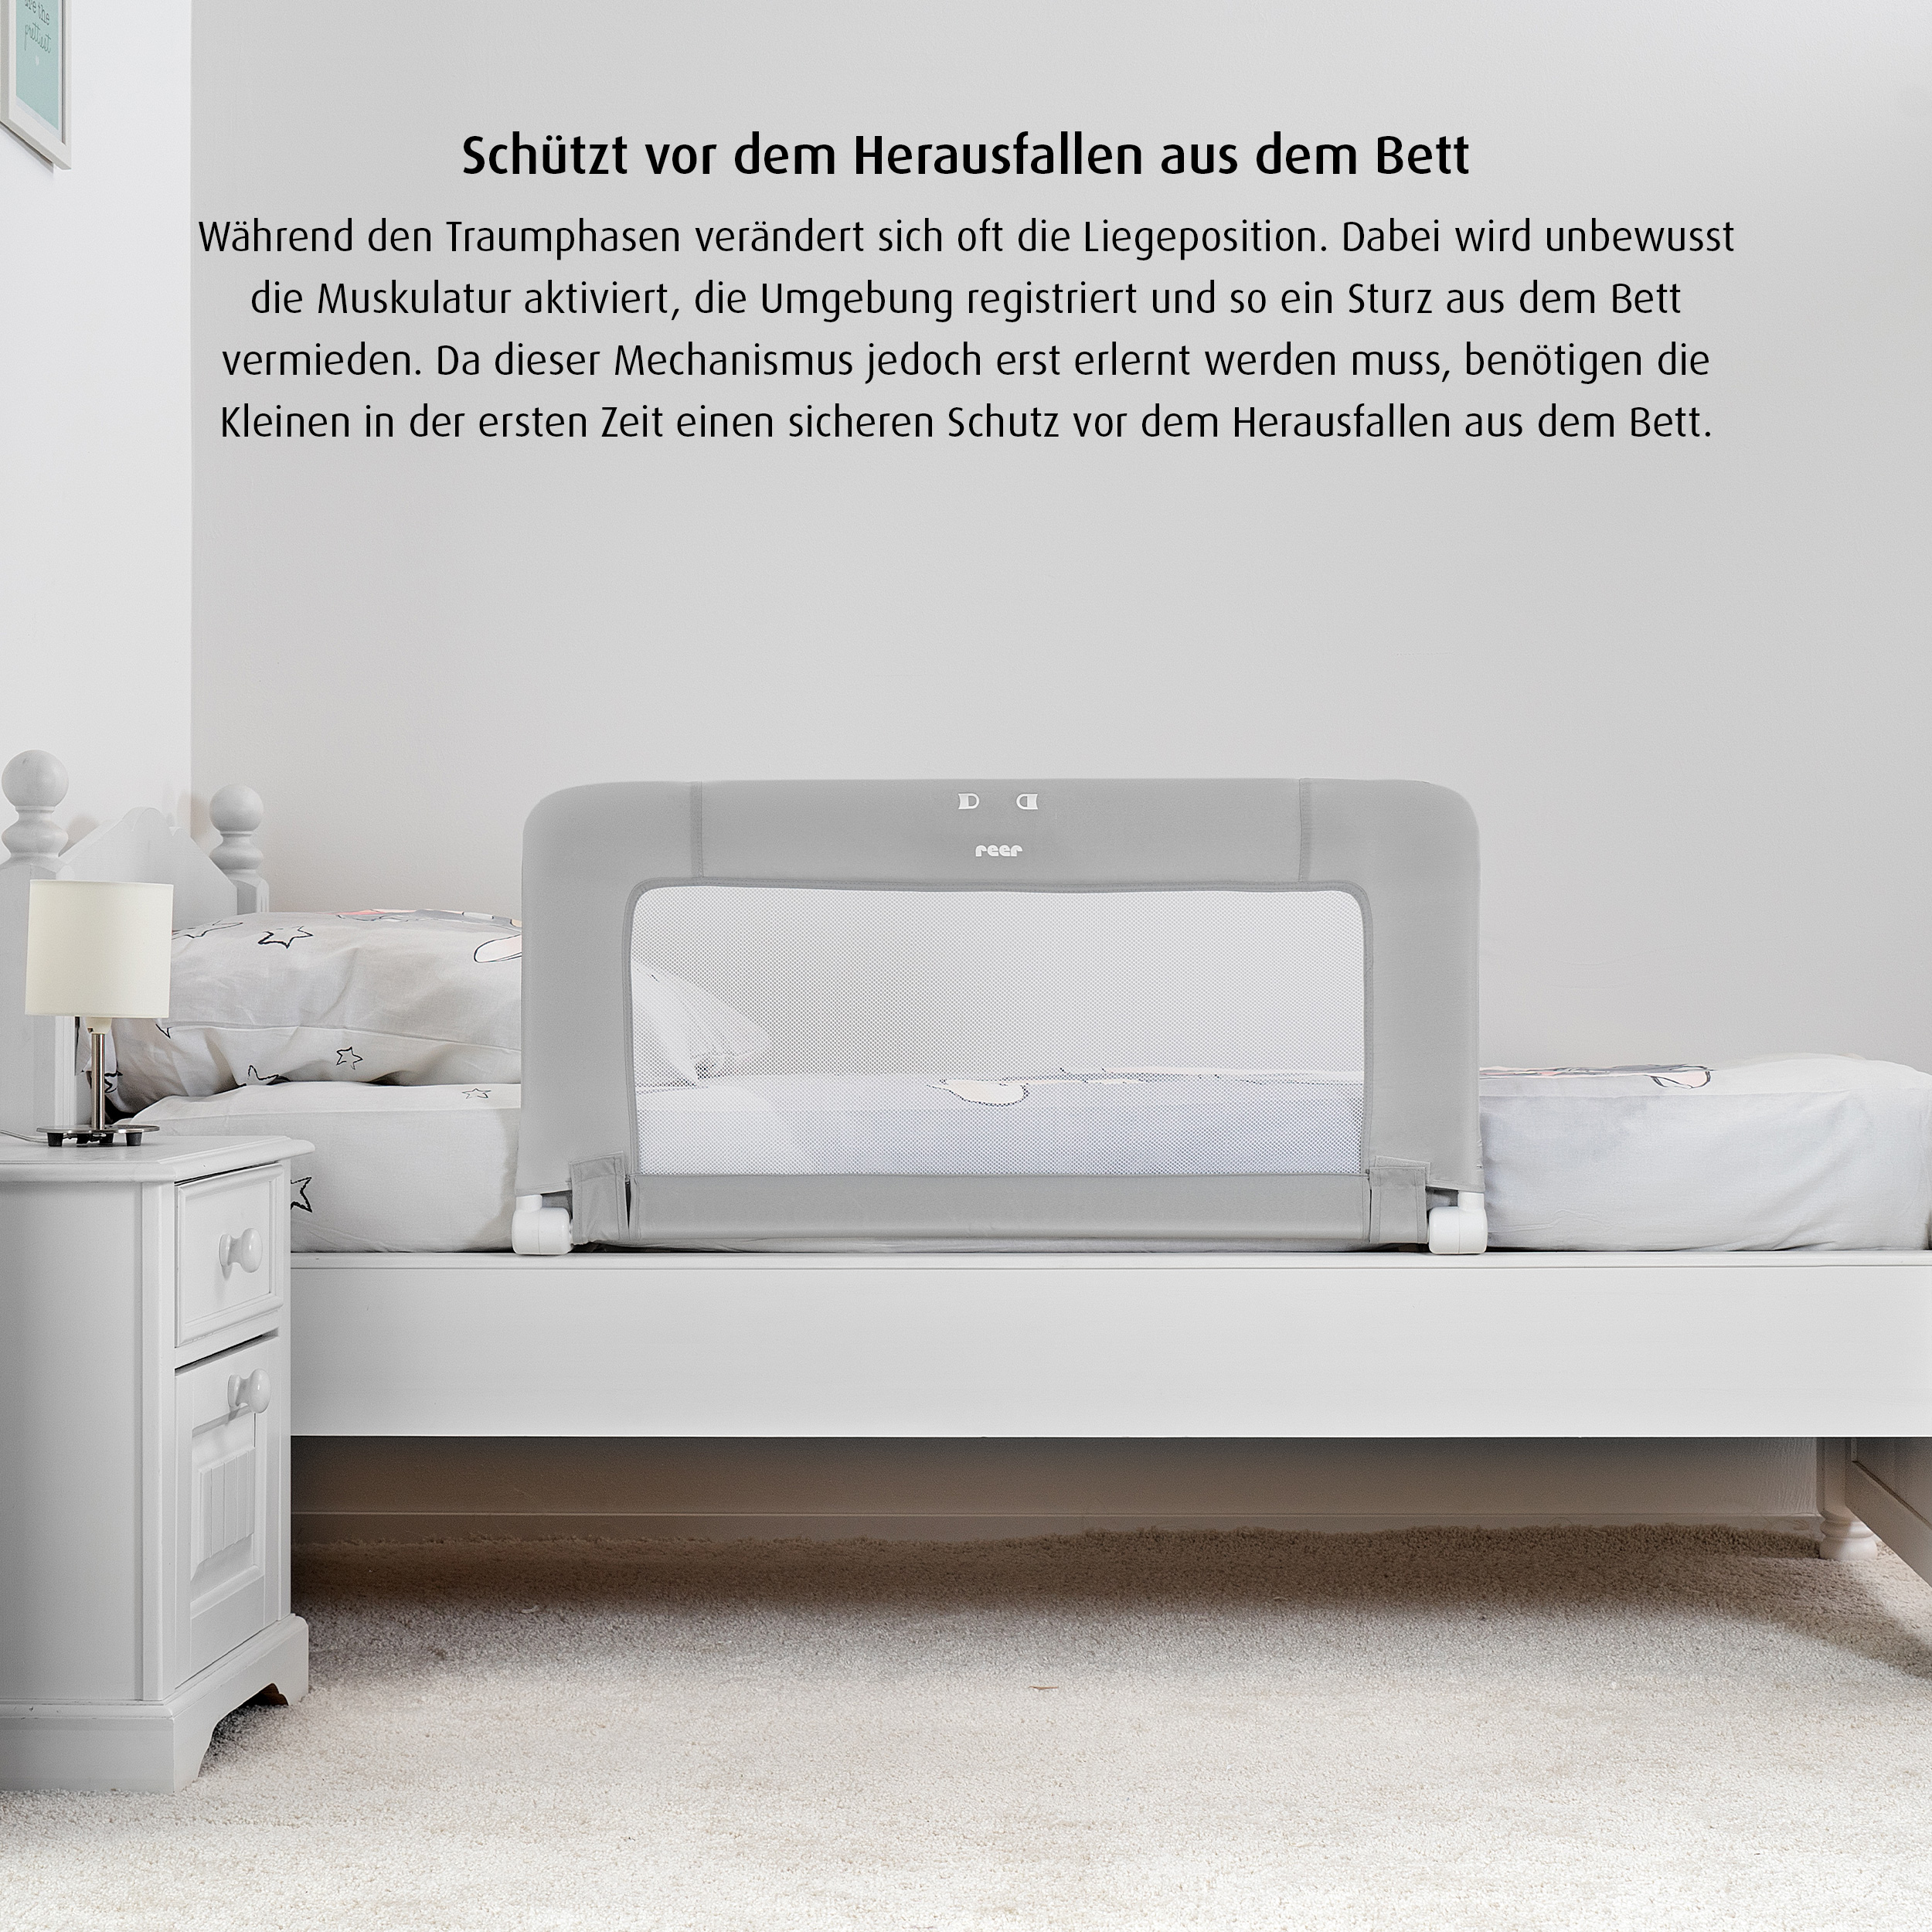 ByMySide Bettgitter mit Abklappfunktion, für Betten mit einer Länge von 180 - 210 cm